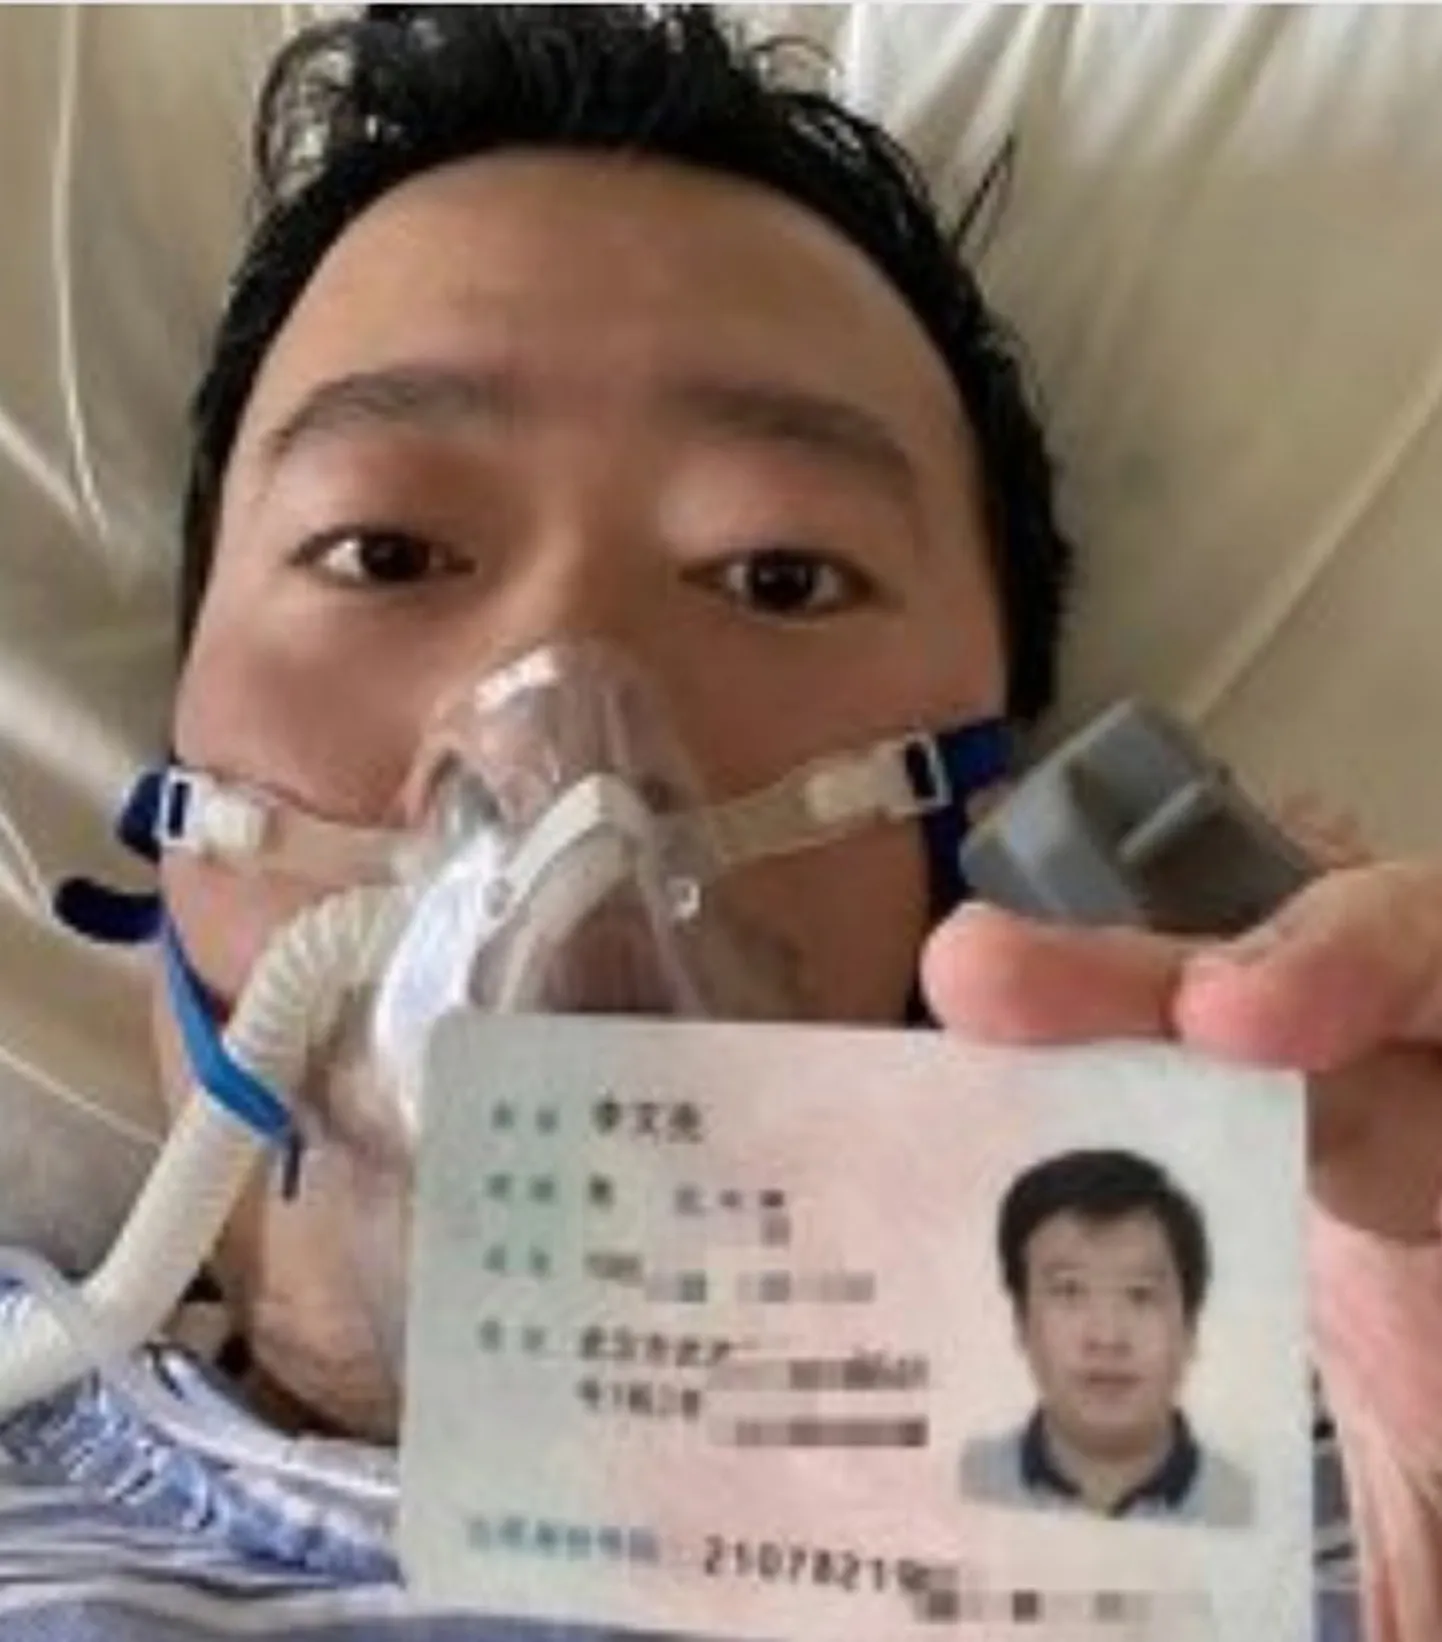 Hiina koroonaviirusest esimesena hoiatanud arst Li Wenliang, kes ka ise haigusesse suri.